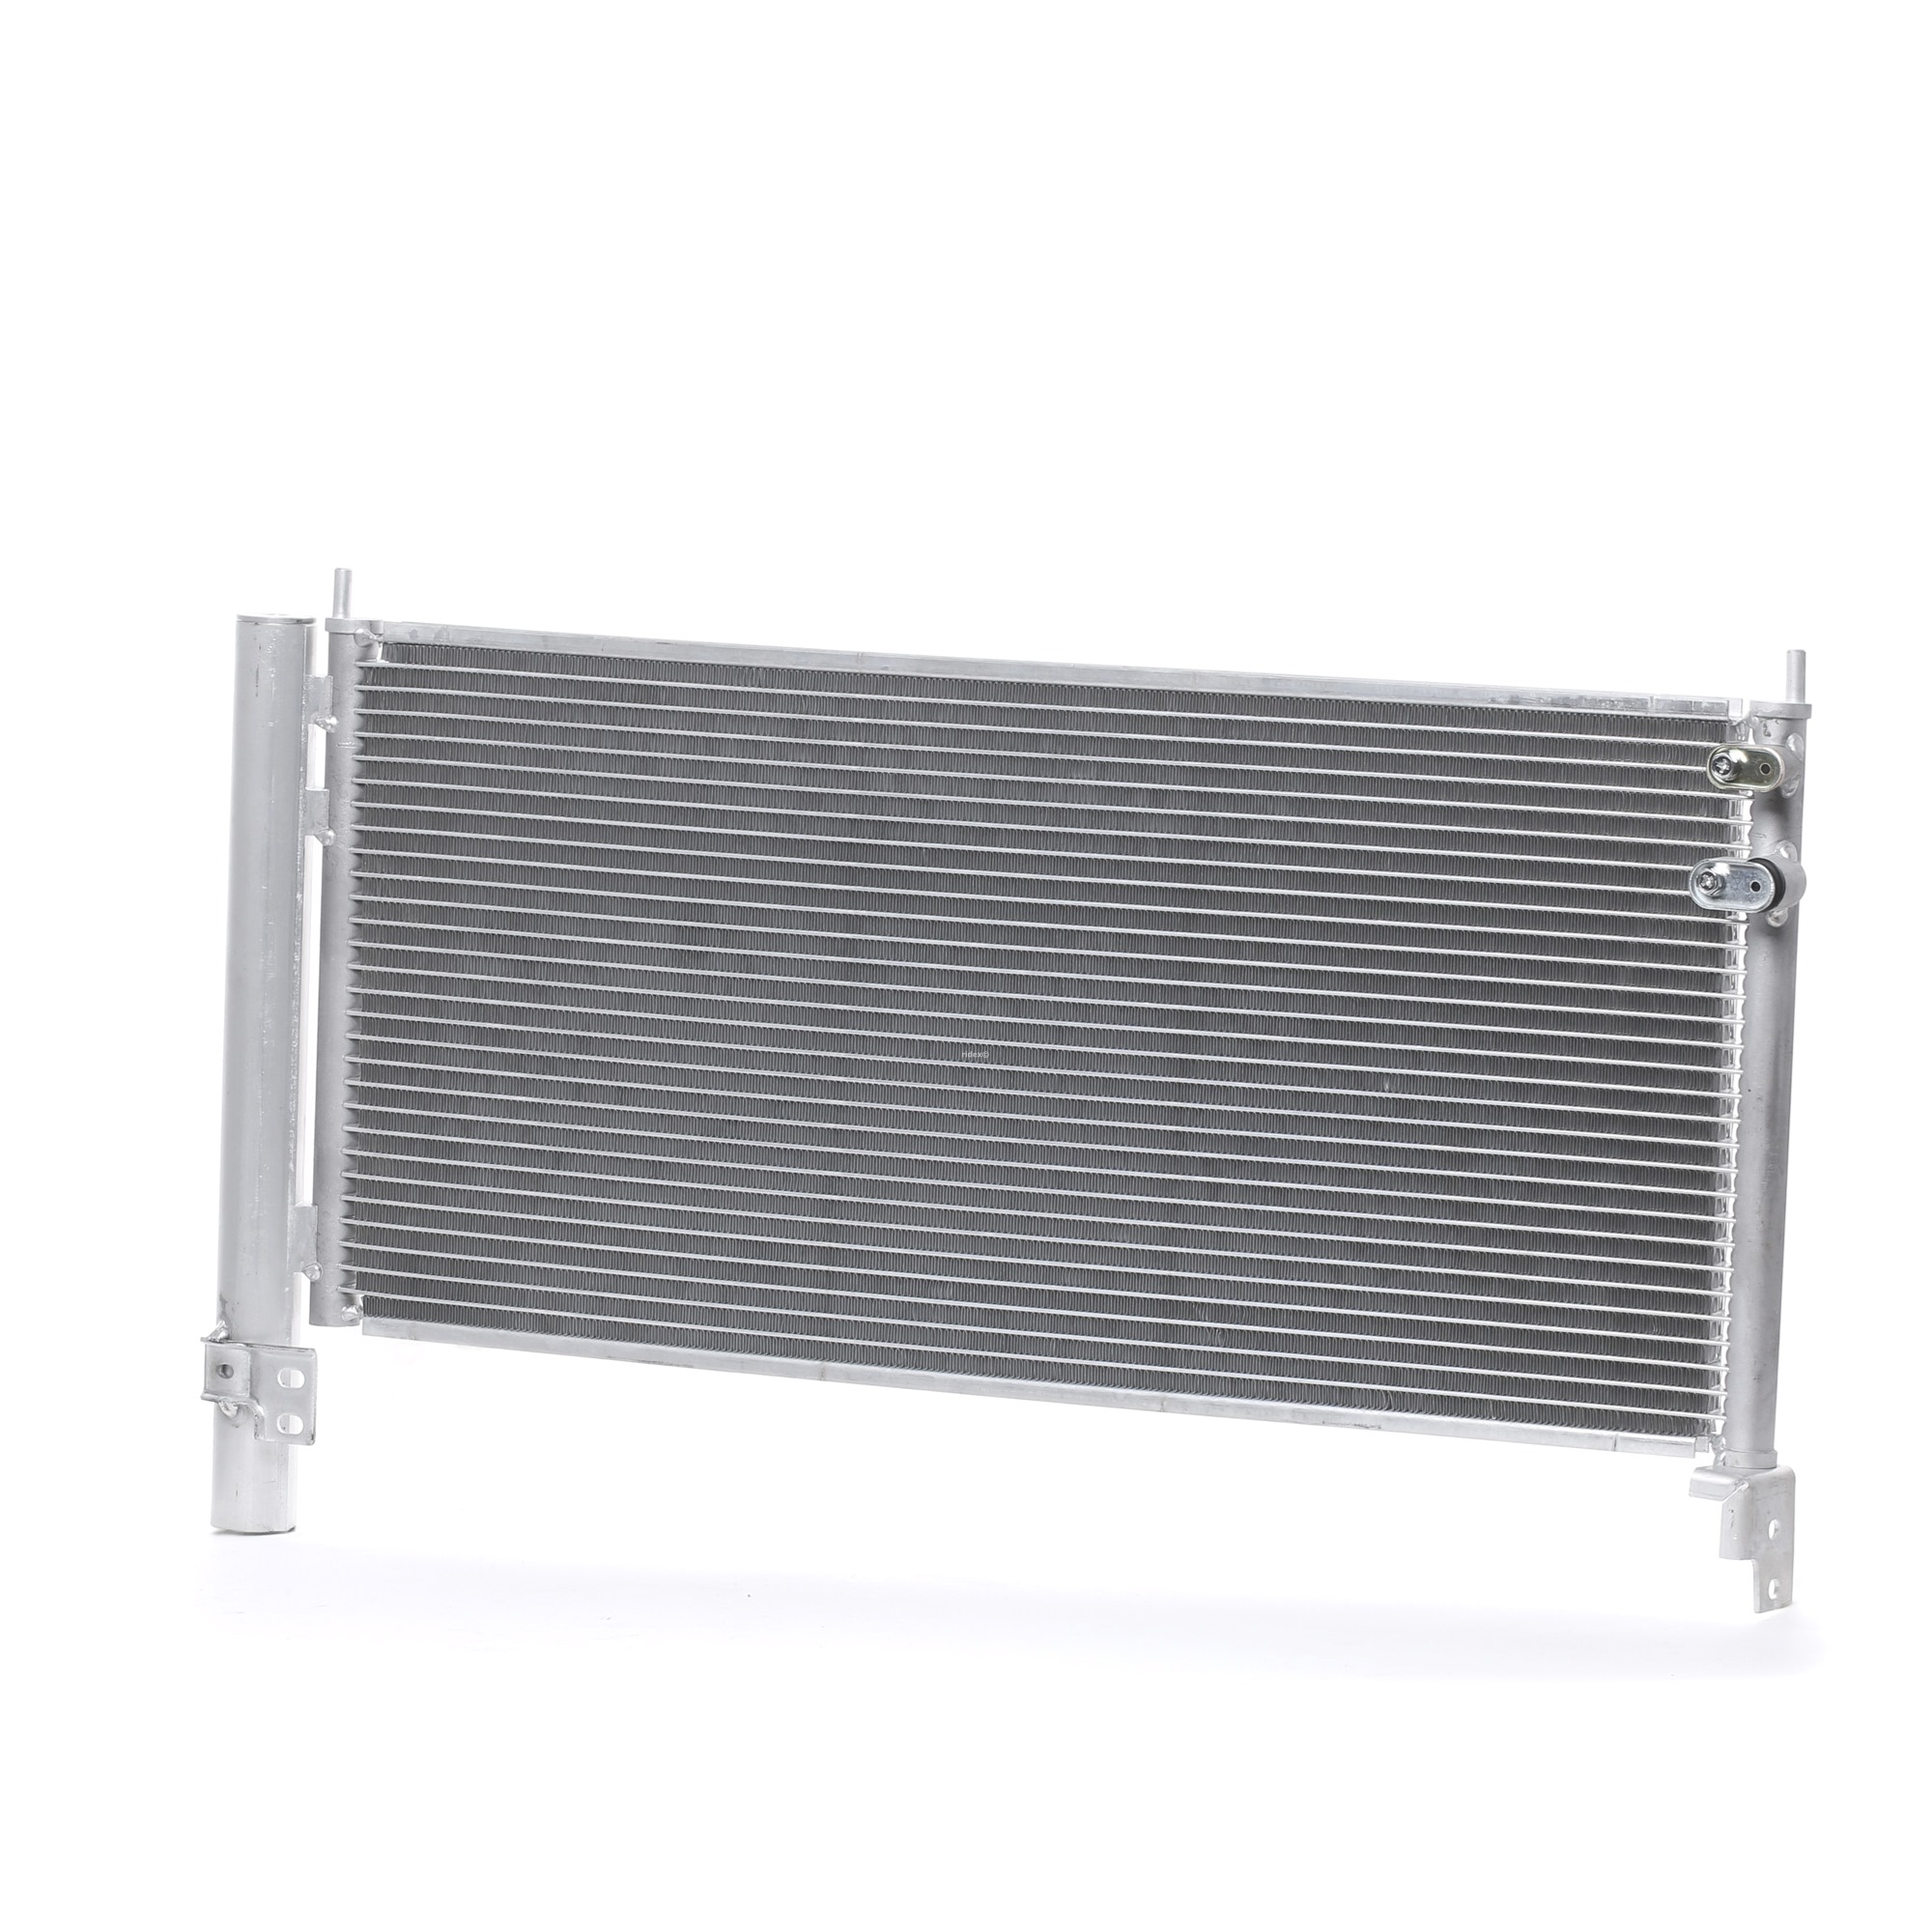 RIDEX 448C0262 Air conditioning condenser with dryer, 675 x 293 x 23 mm